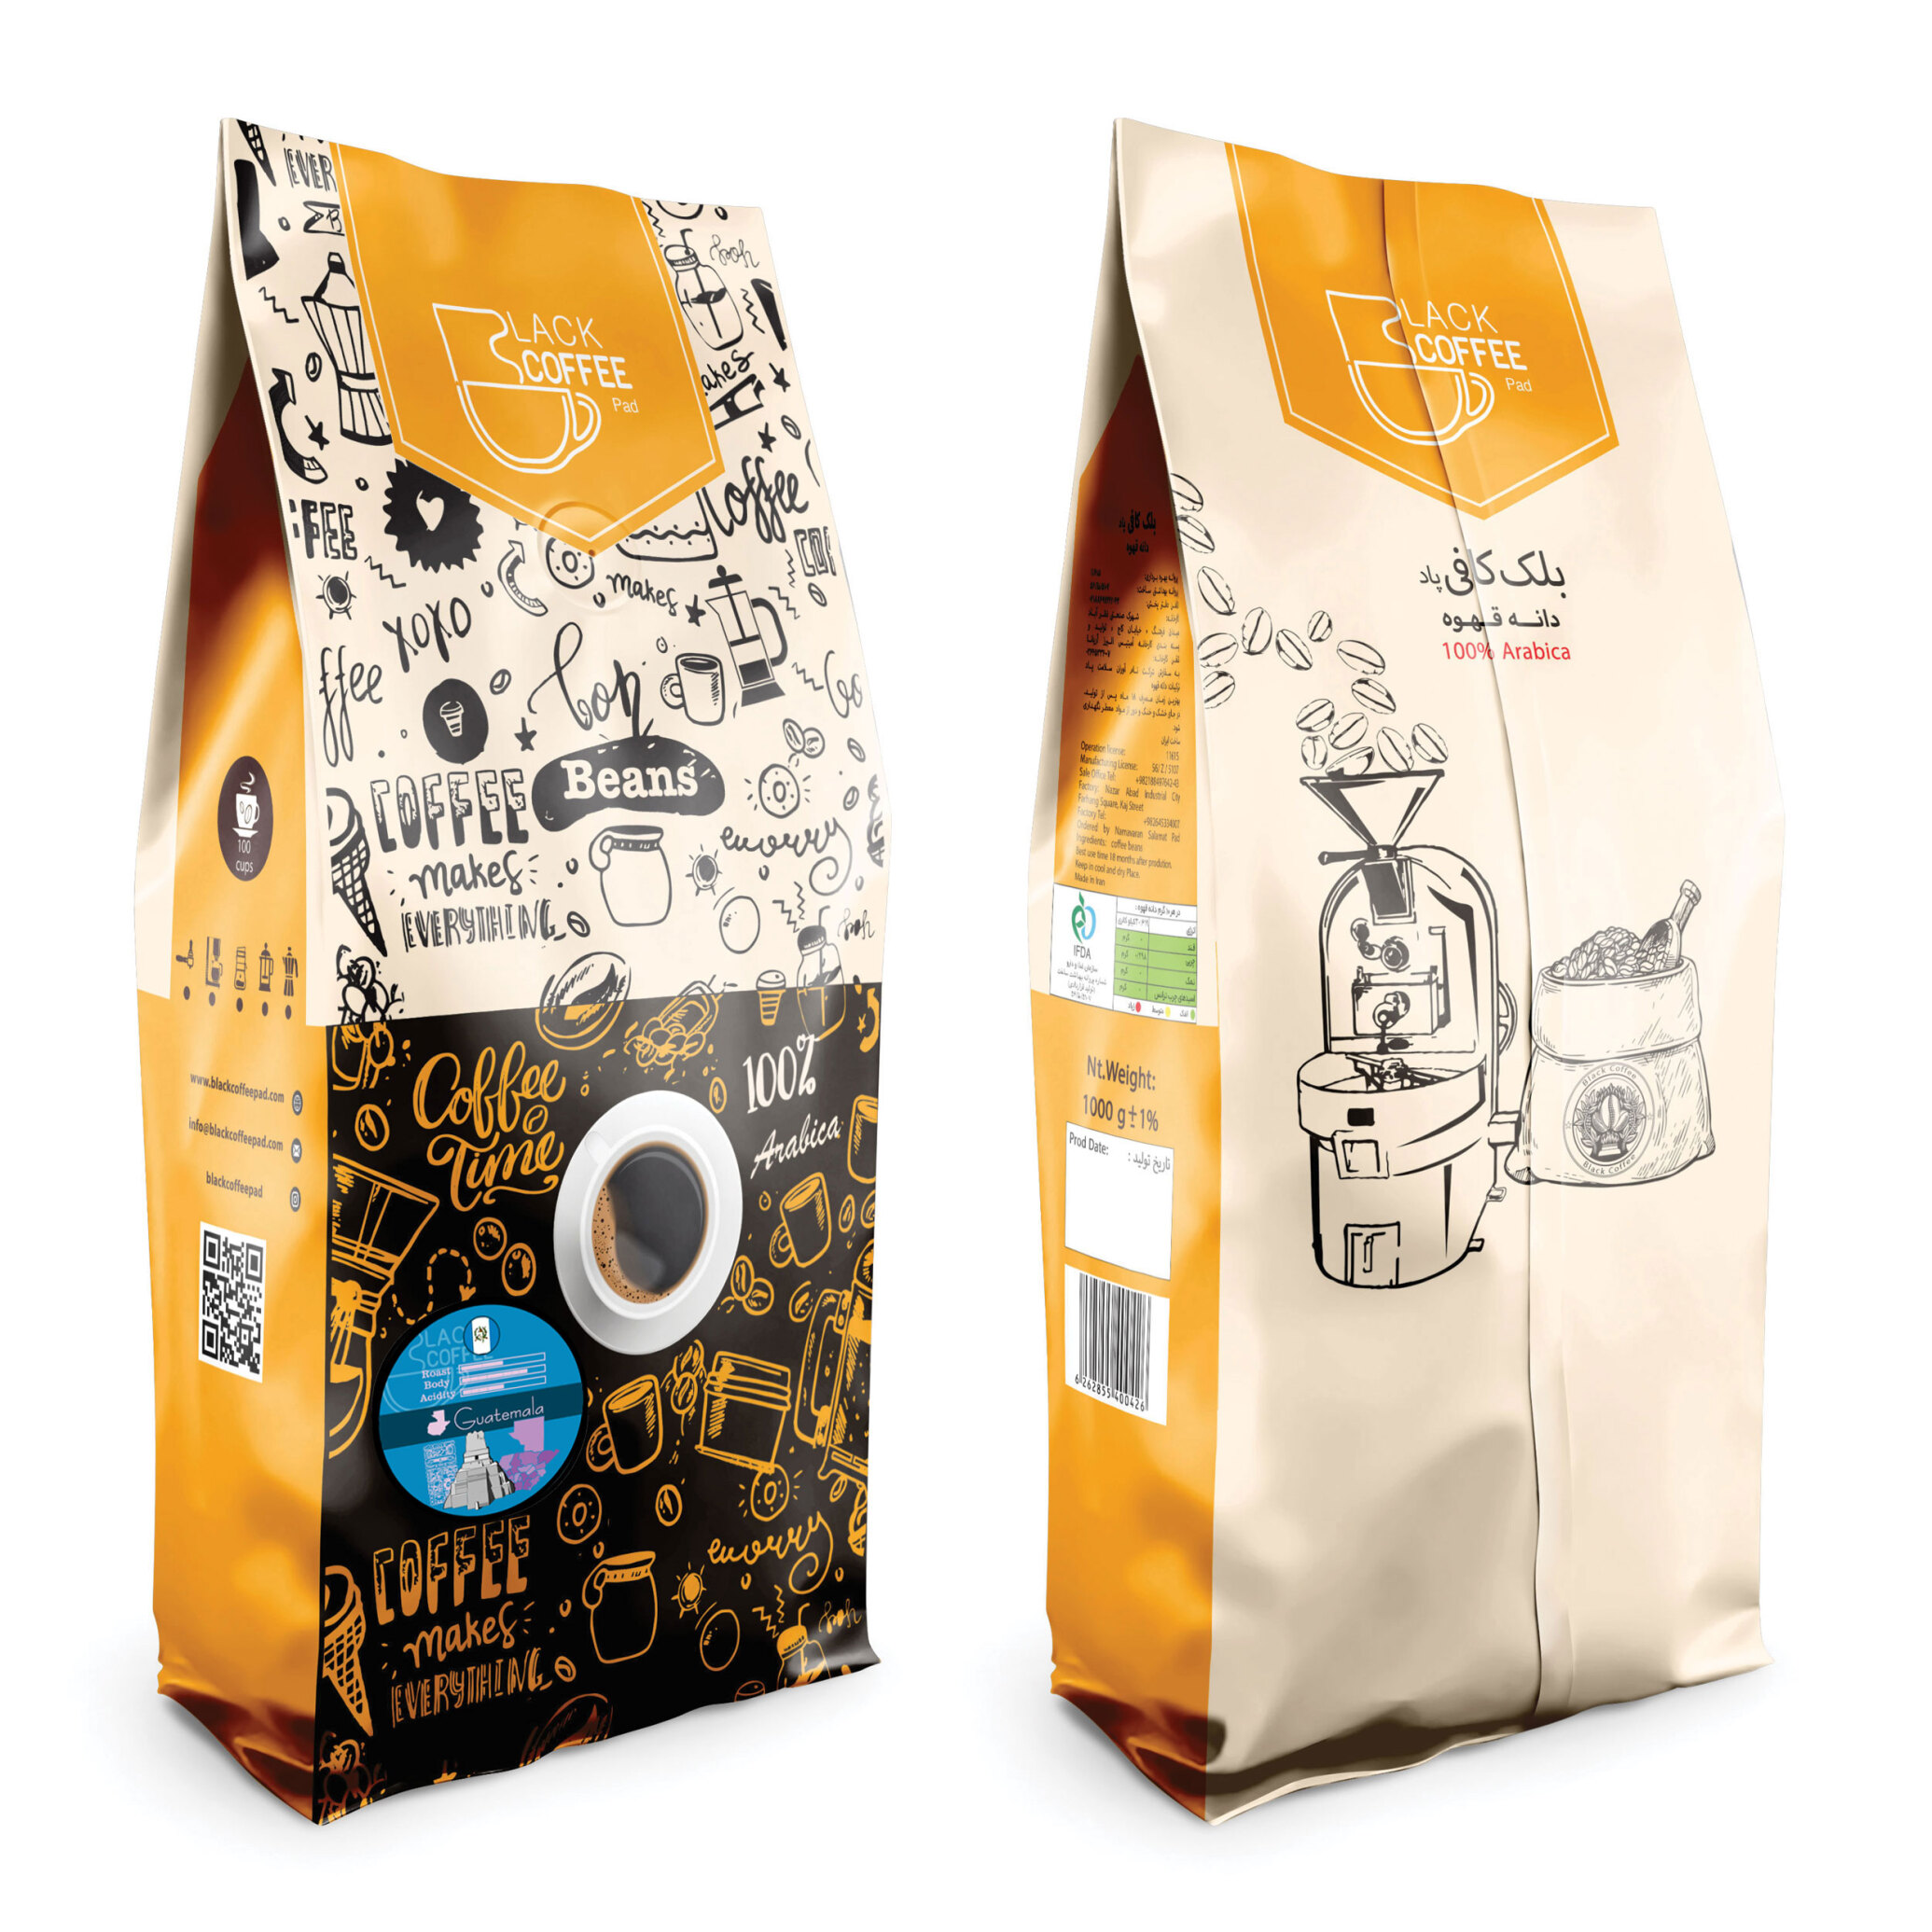  دانه قهوه گواتمالا - Guatemala Coffee Beans | بلک کافی | فروشگاه محصولات قهوه و دانه قهوه 